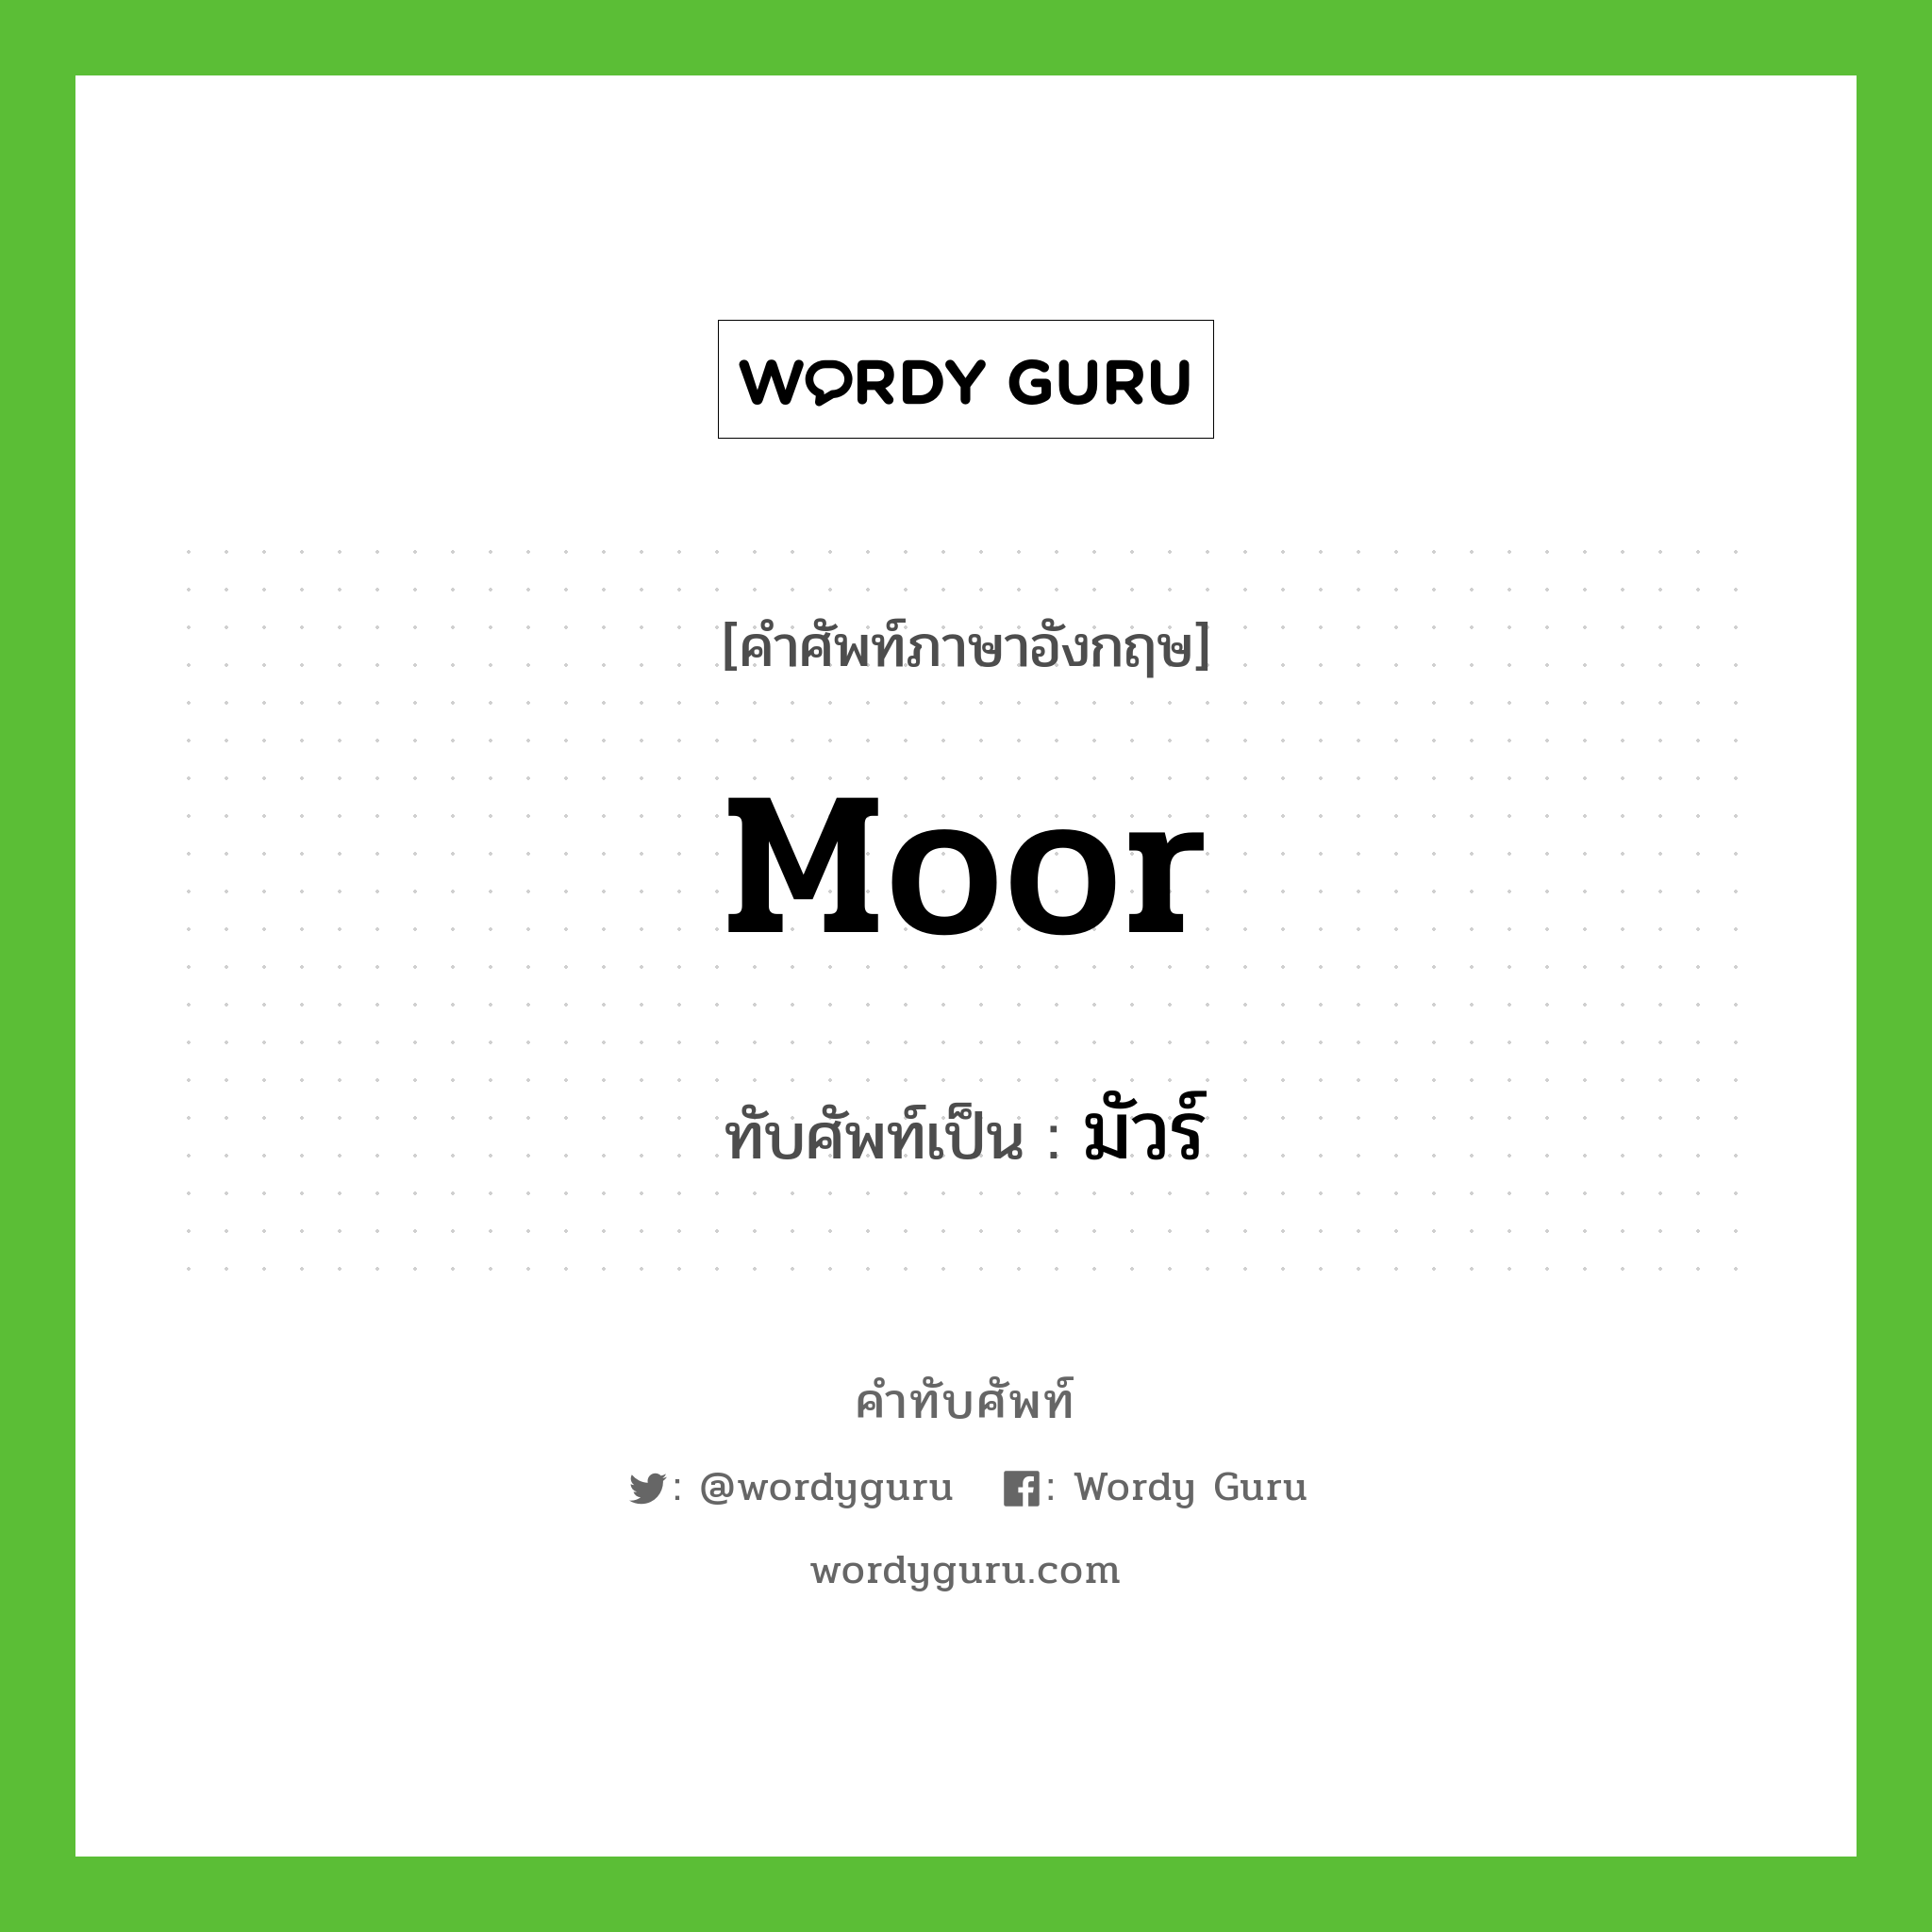 Moor เขียนเป็นคำไทยว่าอะไร?, คำศัพท์ภาษาอังกฤษ Moor ทับศัพท์เป็น มัวร์